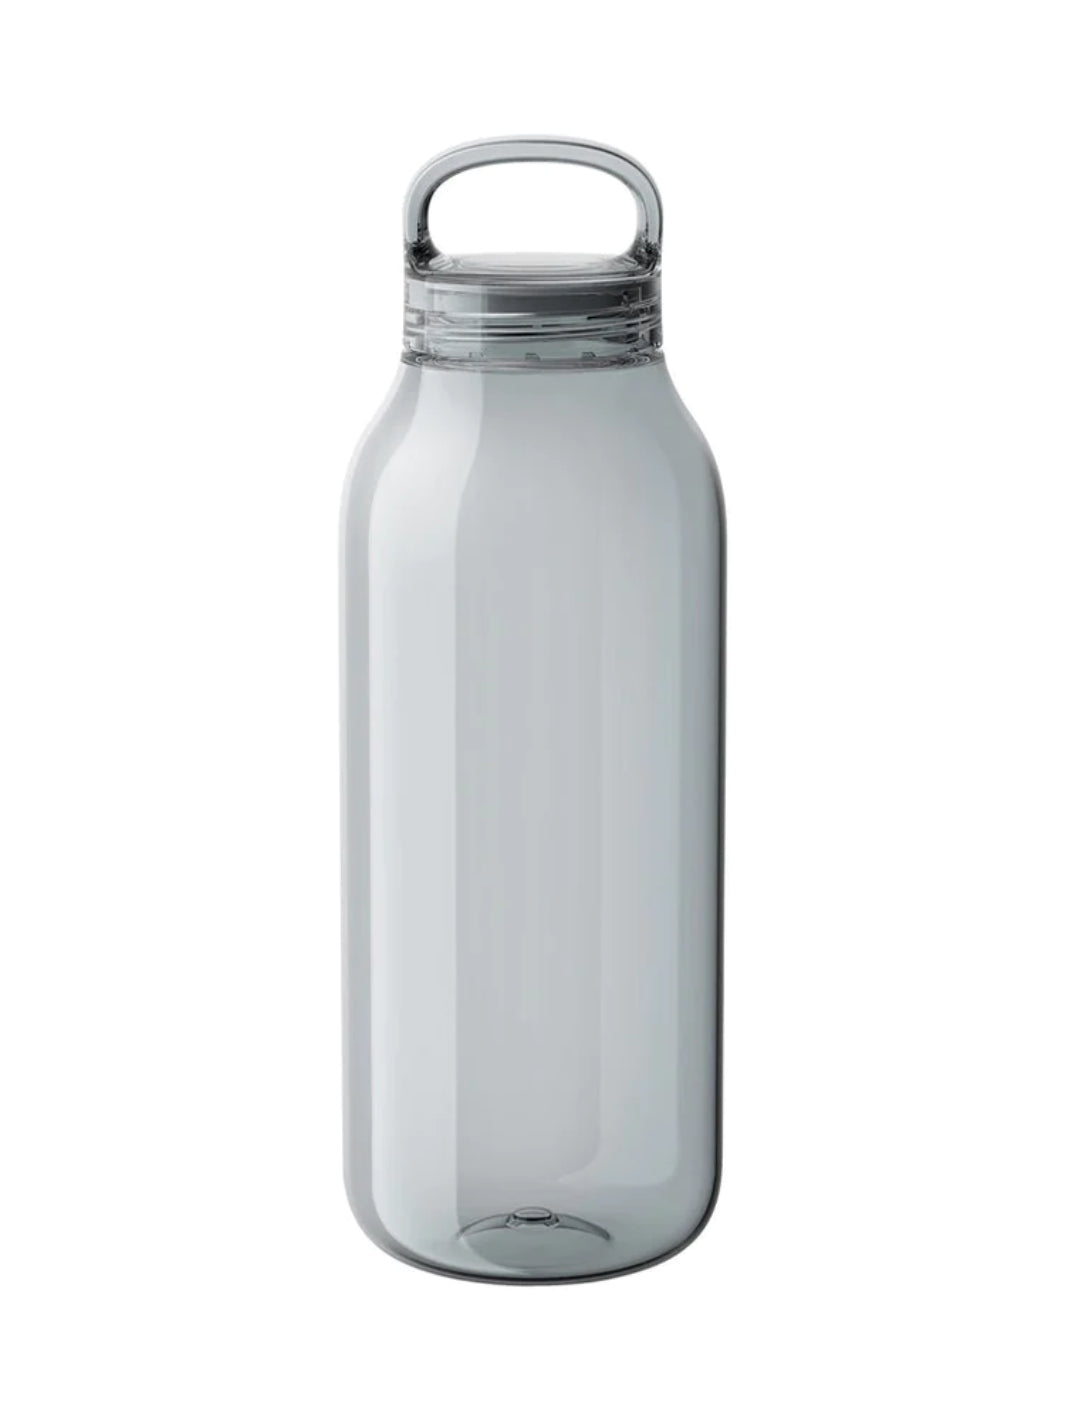 KINTO Water Bottle (950ml/32oz)